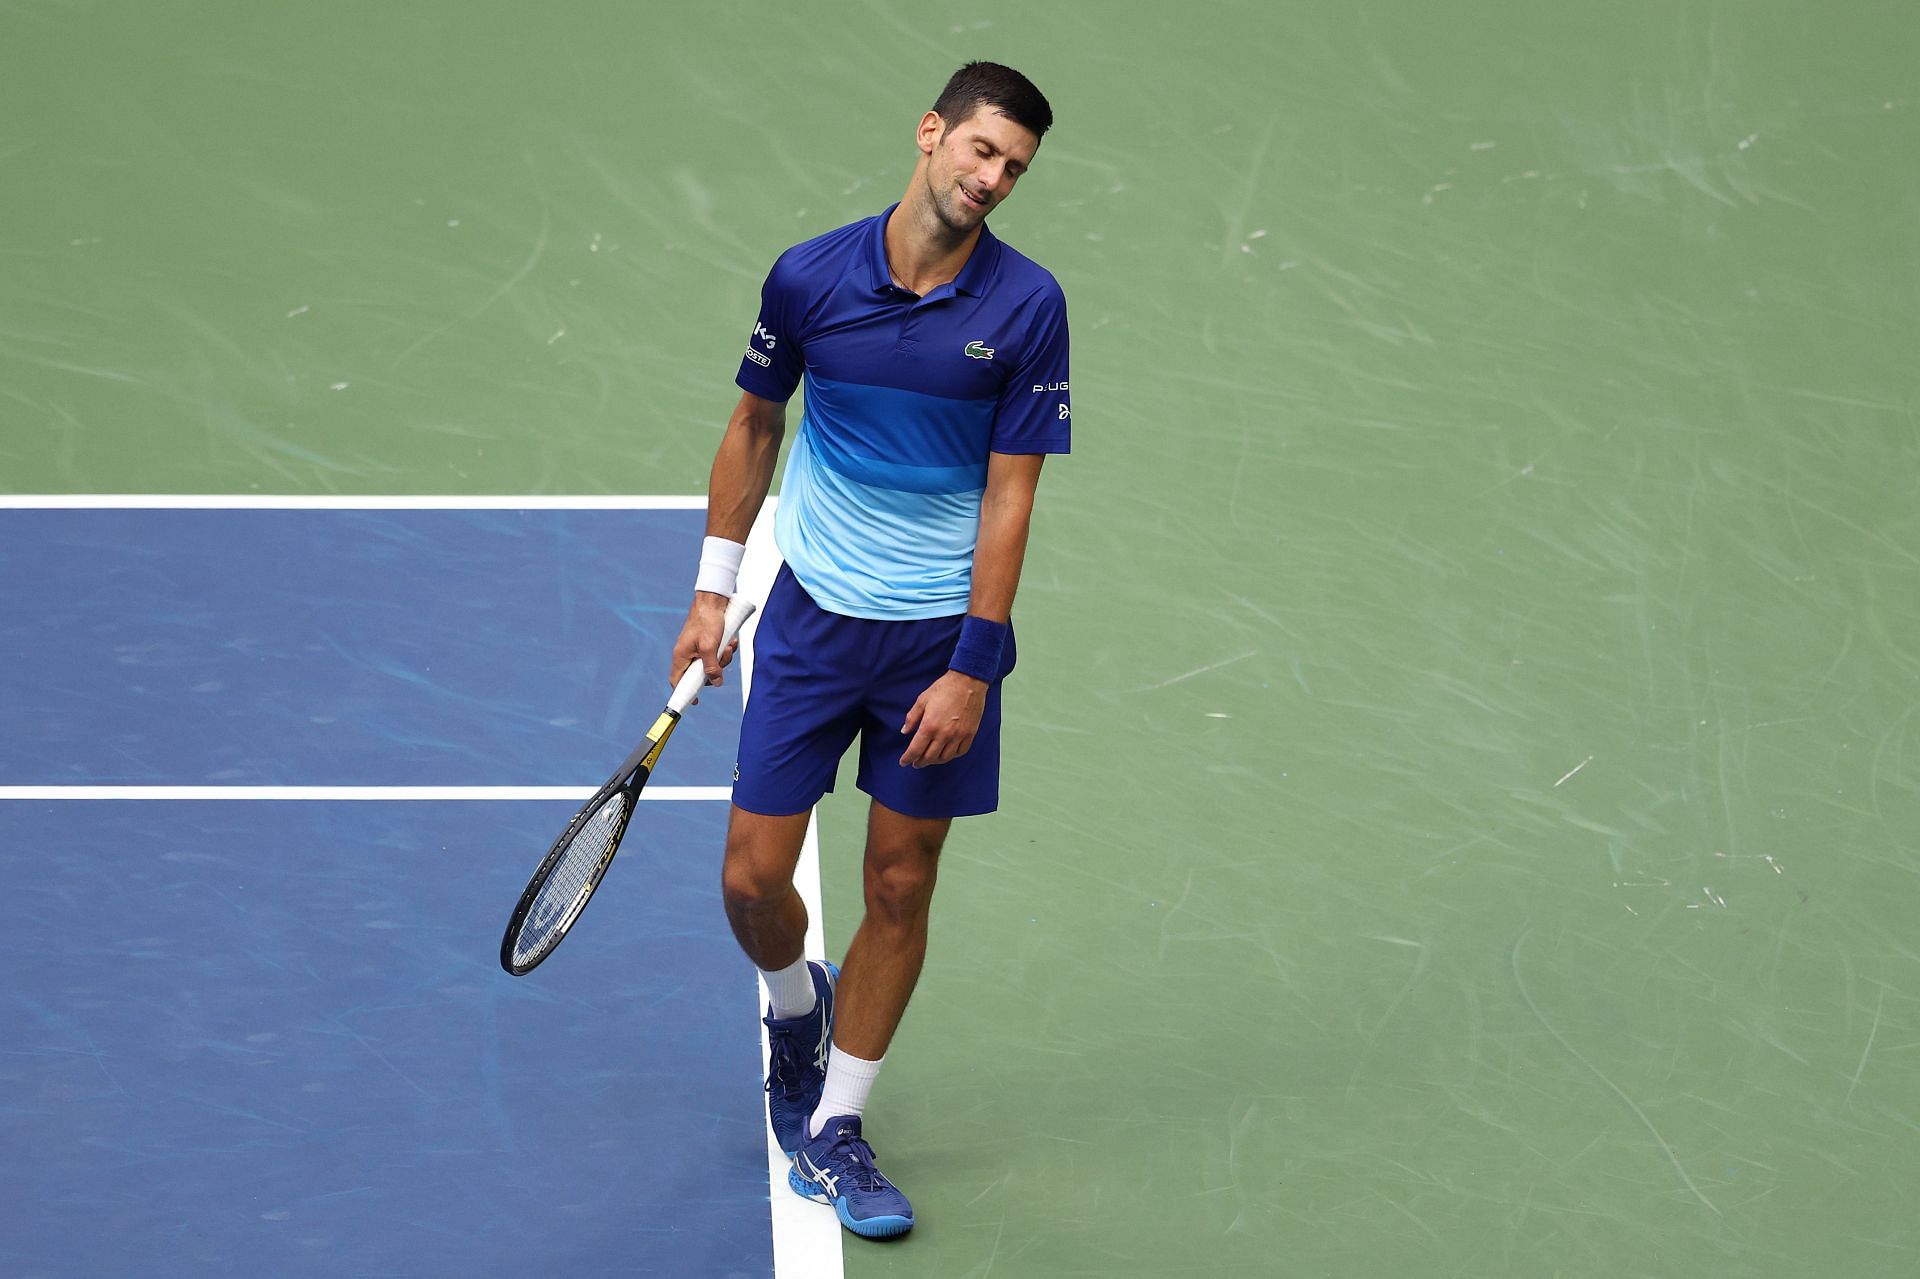 Novak Djokovic should play in US Open Mike Schacter